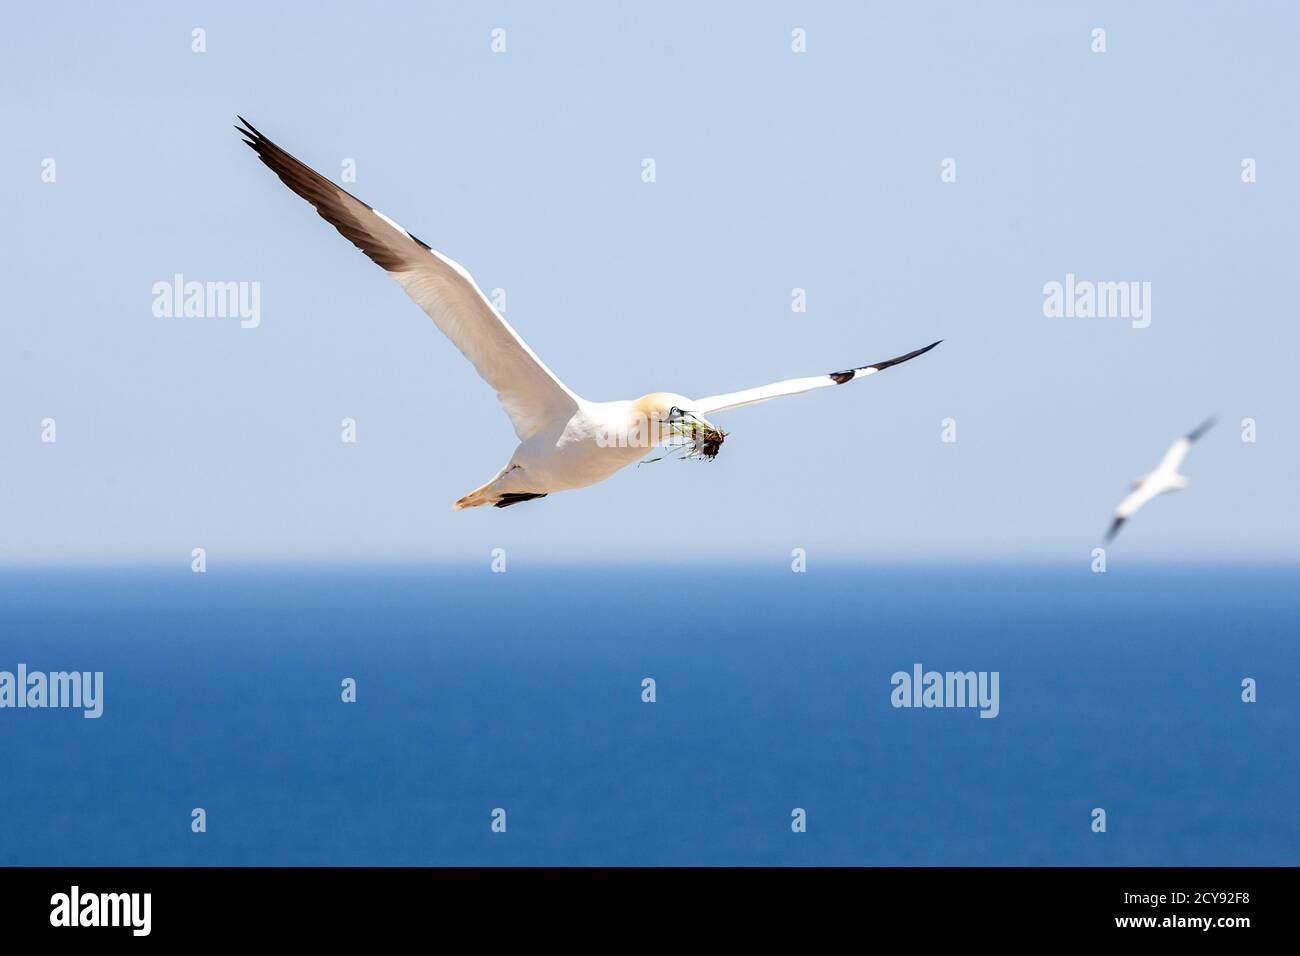 Northen gannet fly in the sky of Bonaventure Island Stock Photo